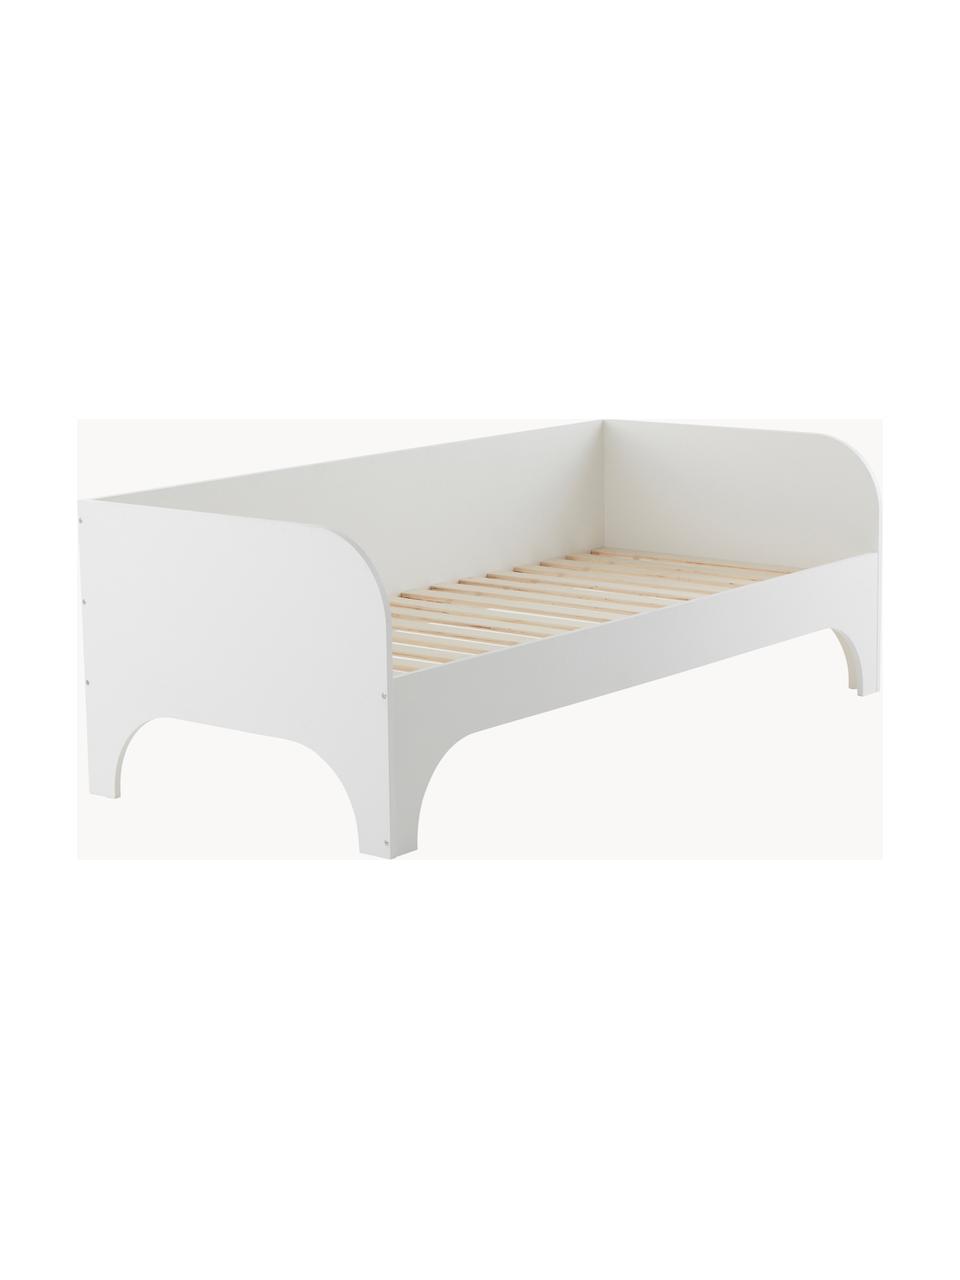 Dřevěná dětská postel Phant, 90 x 200 cn, Dřevovláknitá deska střední hustoty (MDF), Dřevo, lakováno bílou barvou, Š 90 cm, D 200 cm